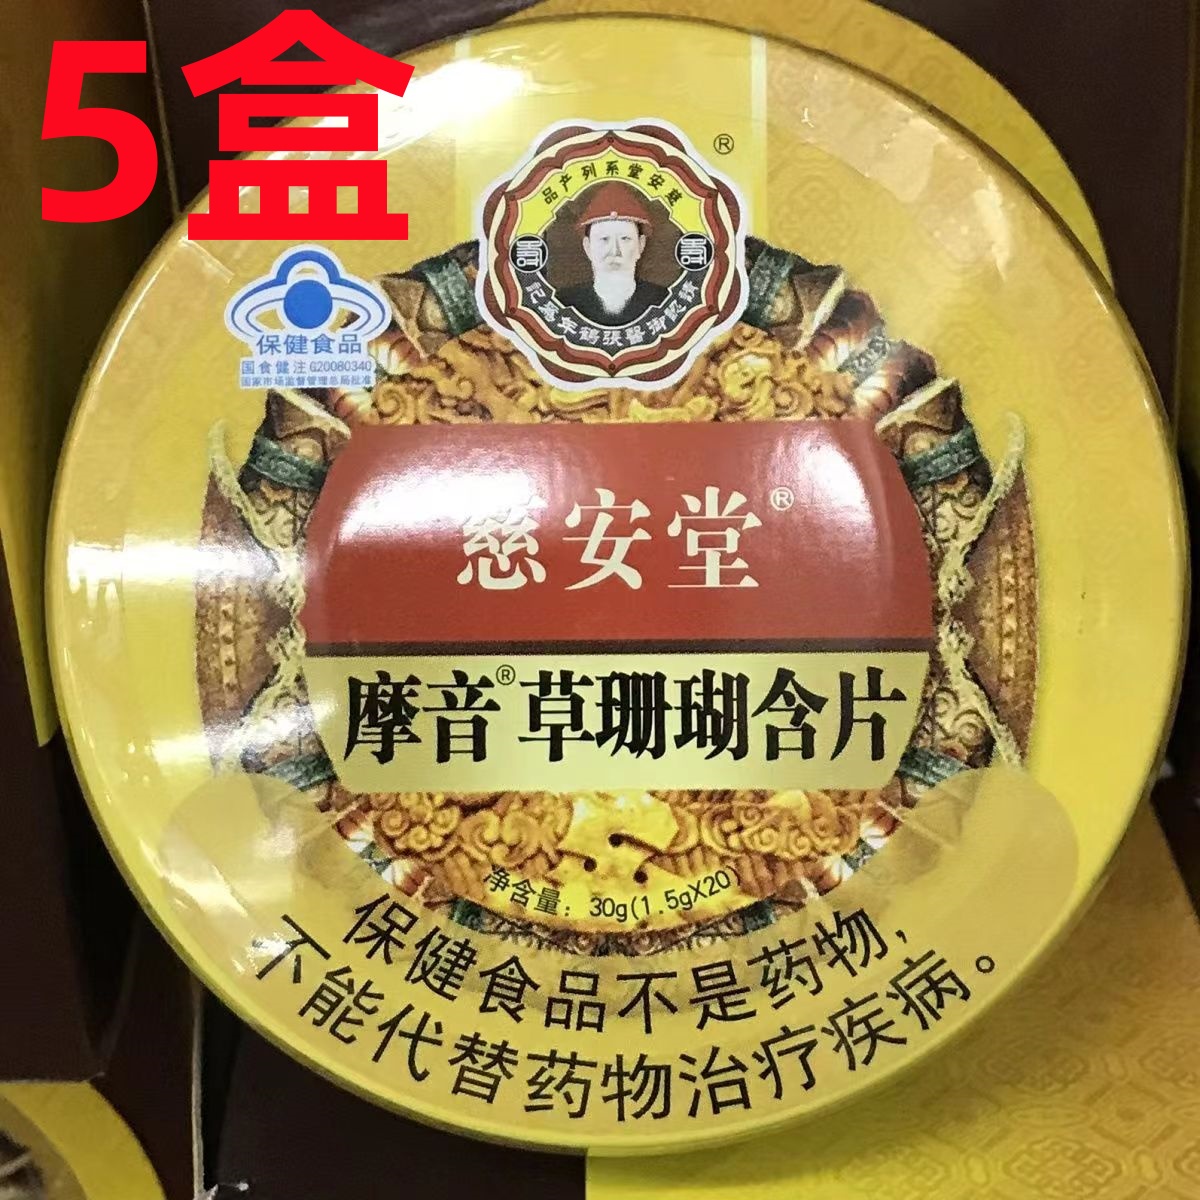 【5盒】慈安堂 摩音草珊瑚含片(1.5gx20)净含量30g